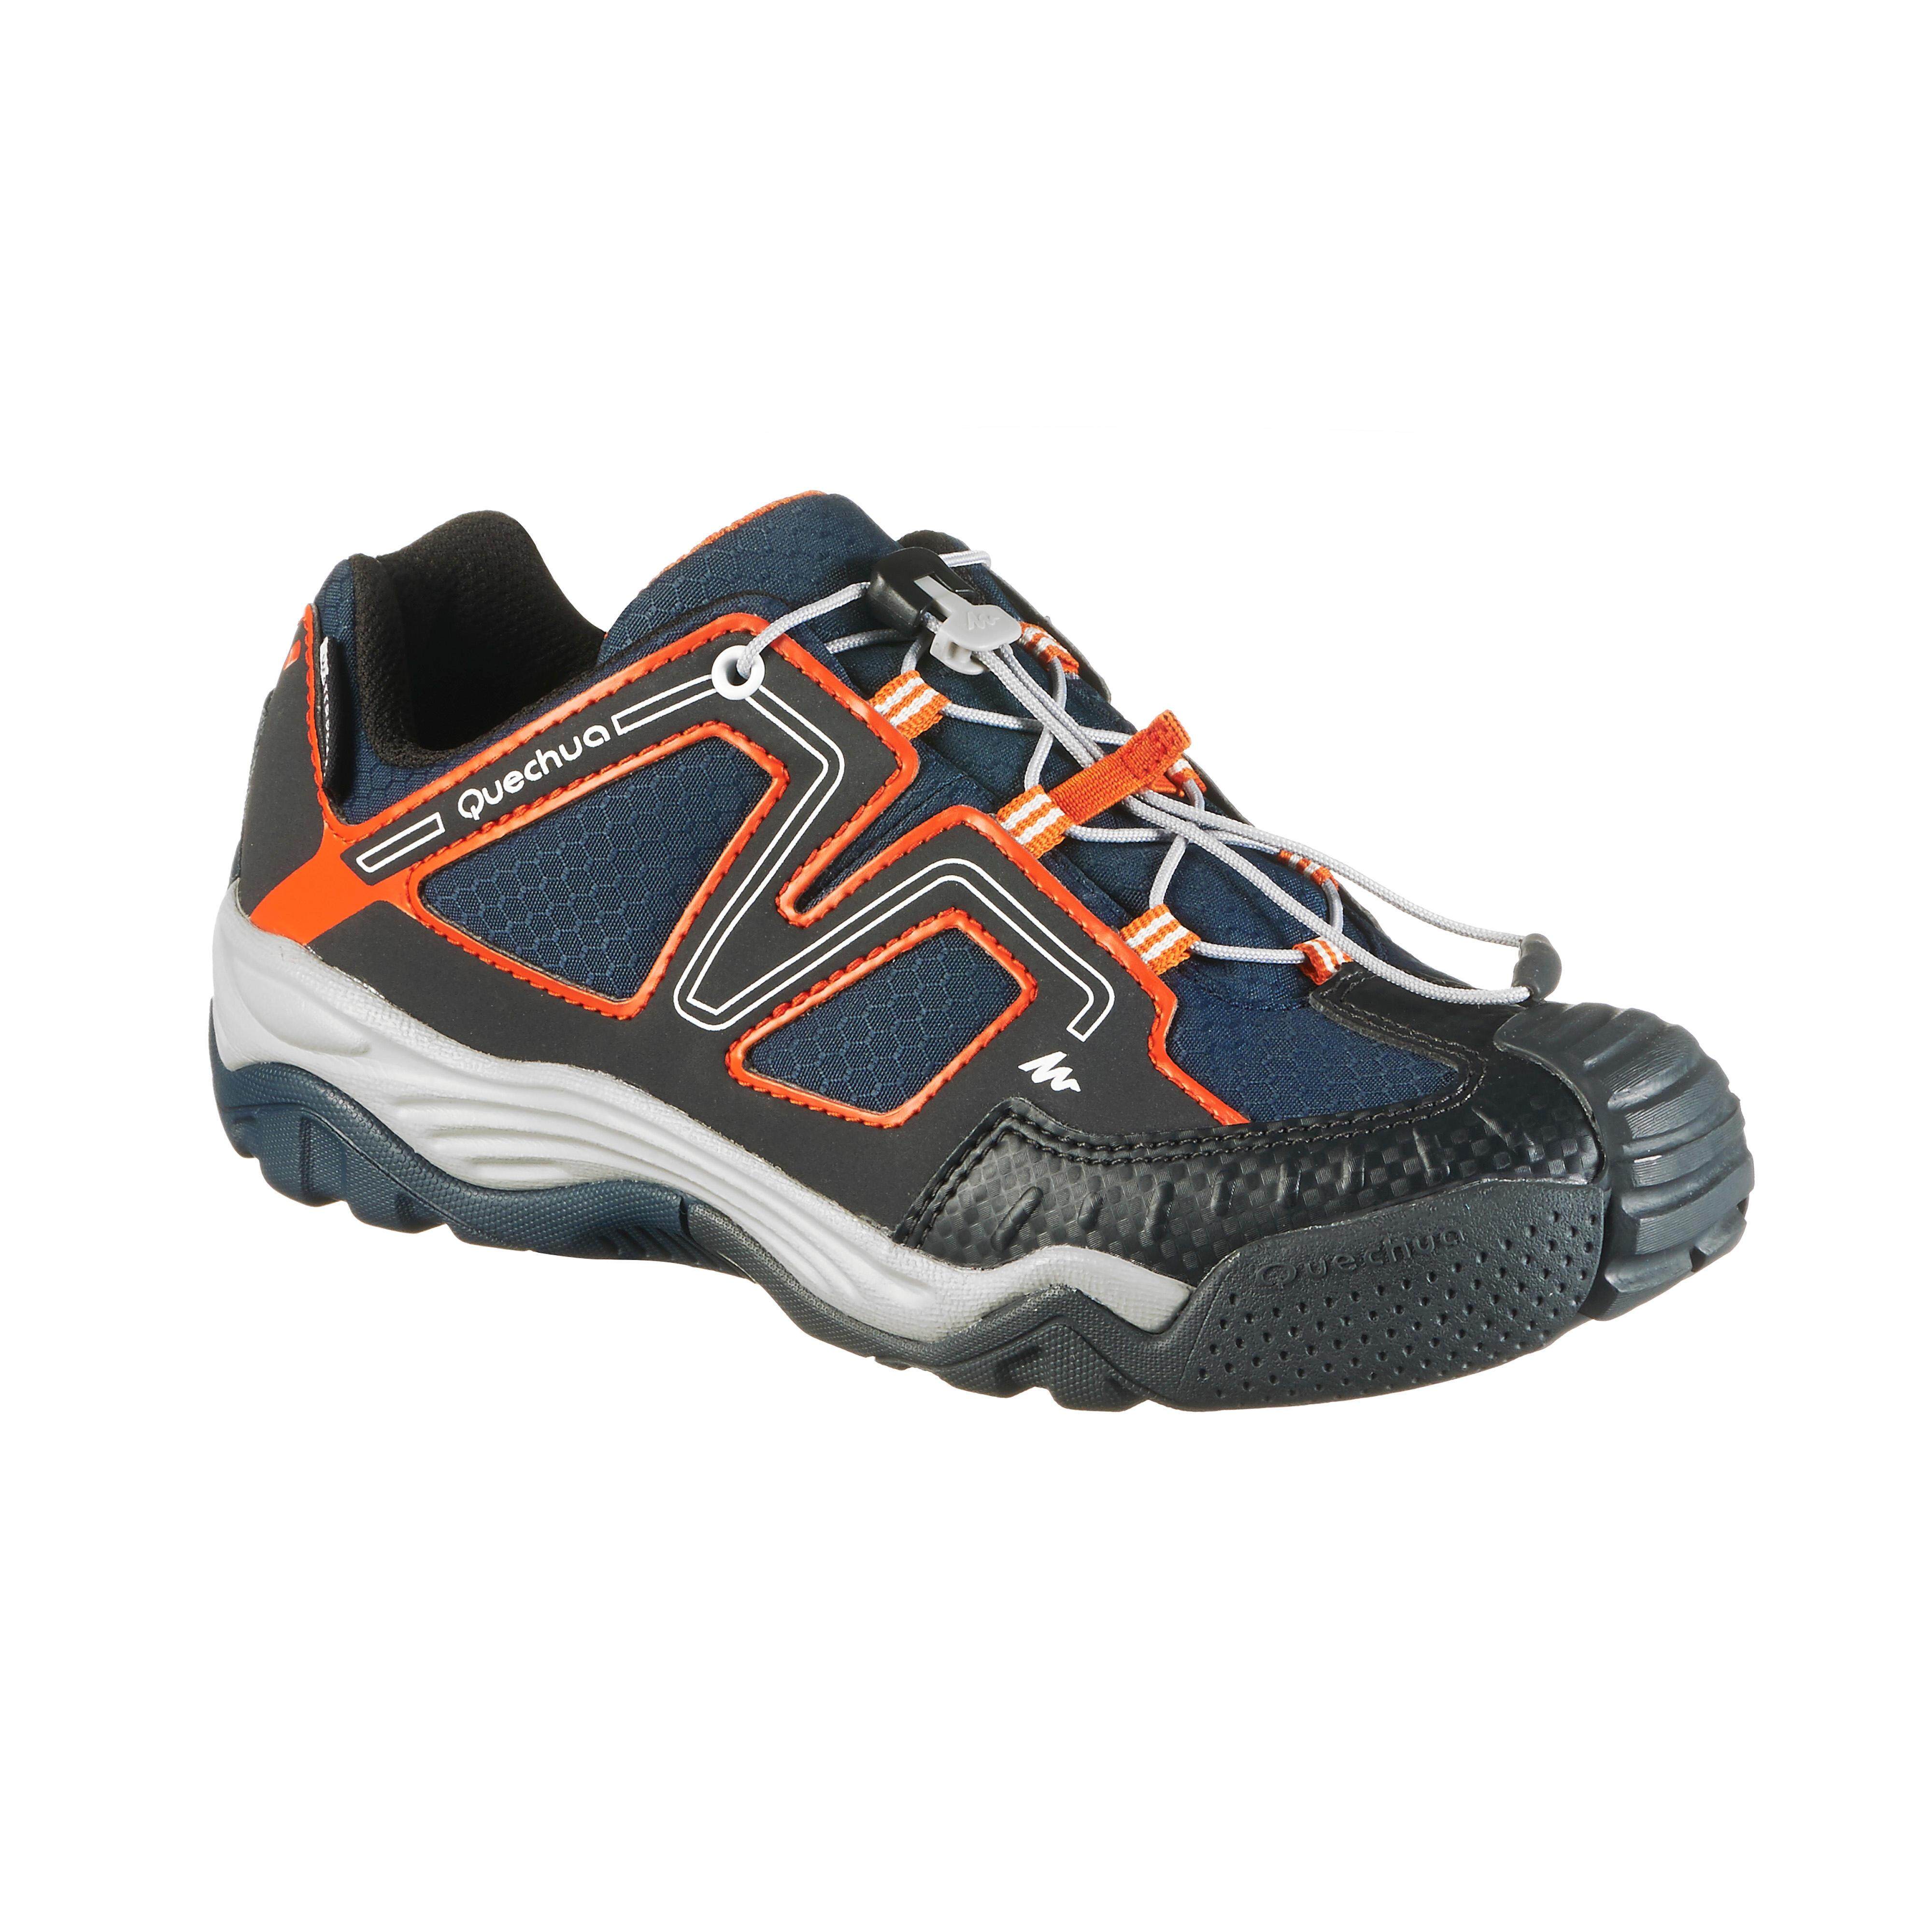 รองเท้าเด็กมีคุณสมบัติกันน้ำสำหรับใส่เดินป่ารุ่น Crossrock (สีน้ำเงิน/ส้ม). 